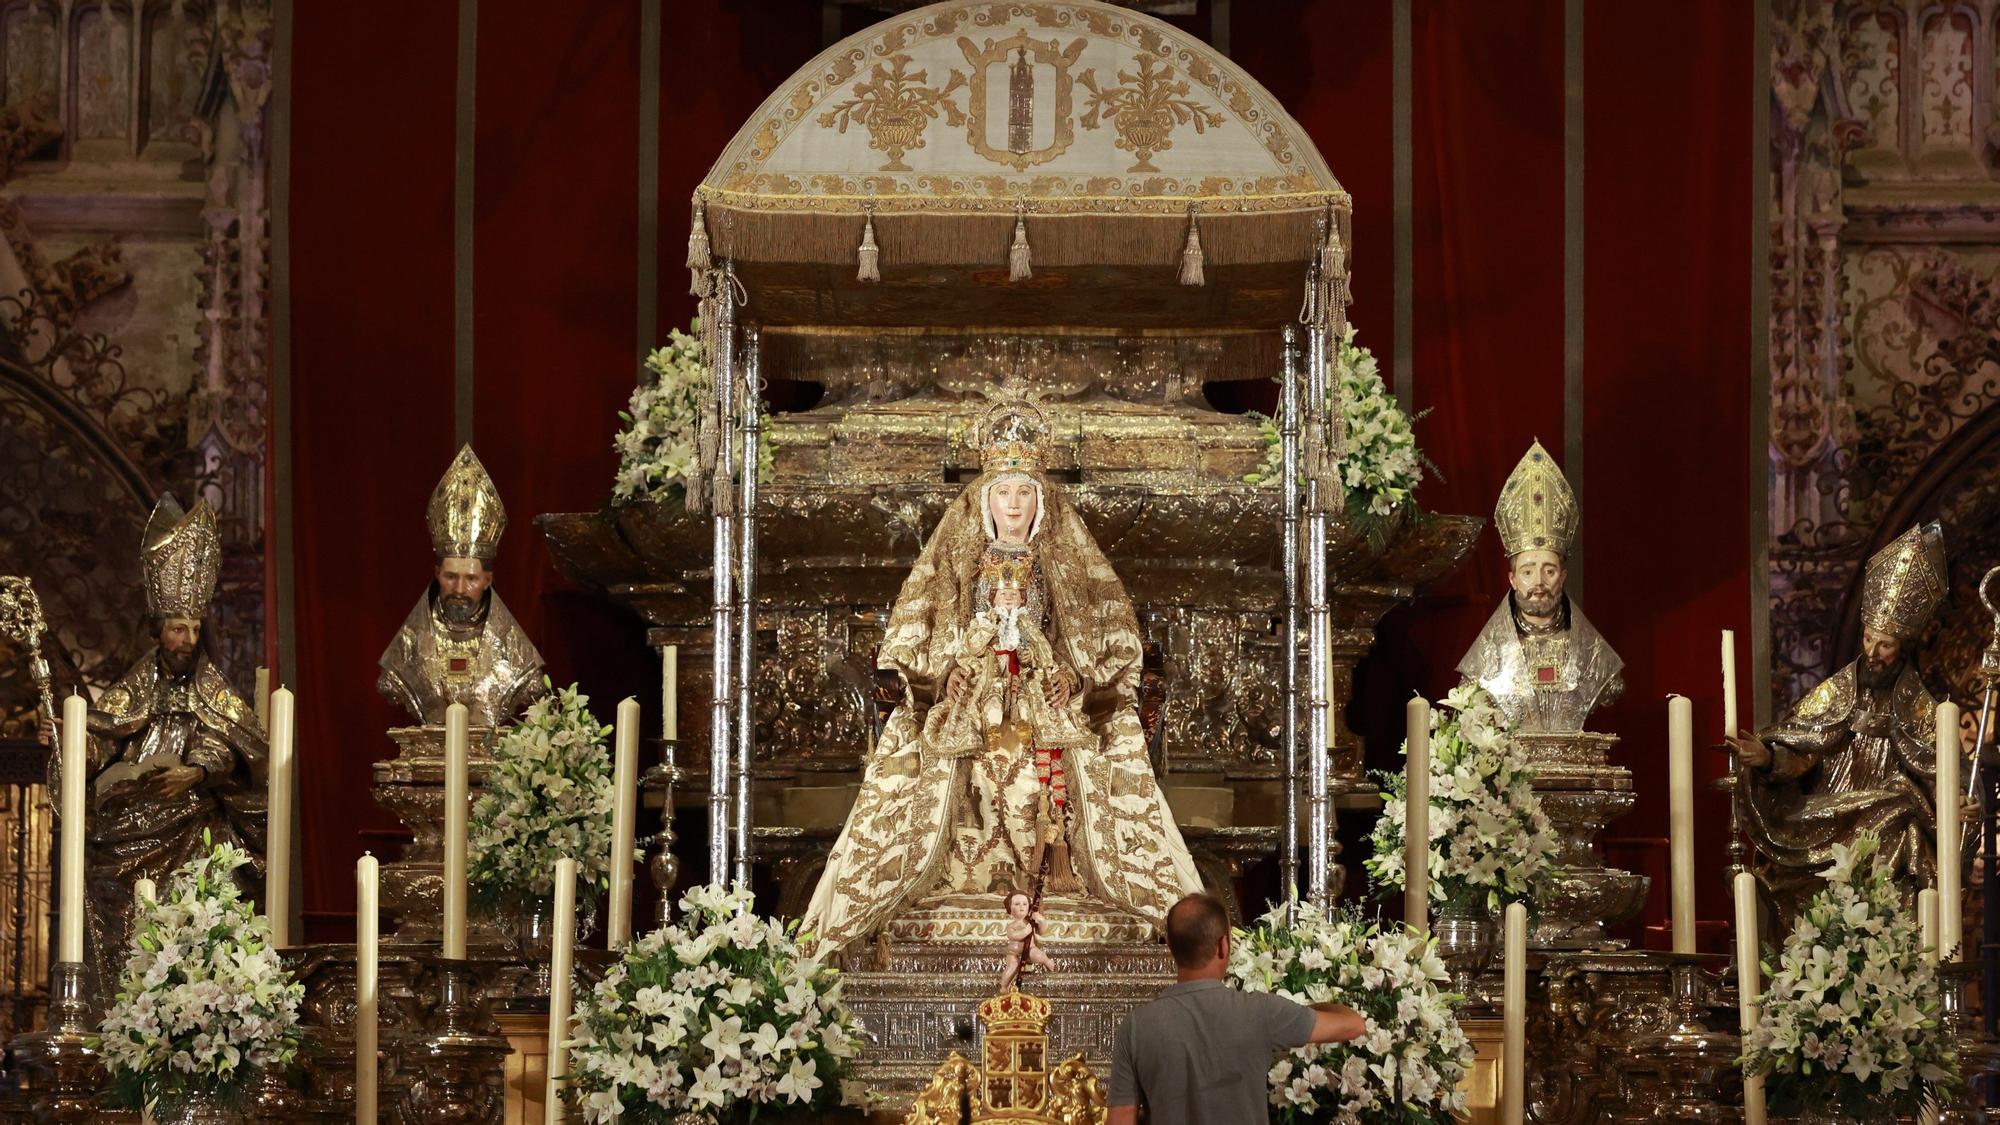 El paso de la Virgen de los Reyes, patrona de Sevilla, lista para procesionar el día 15.